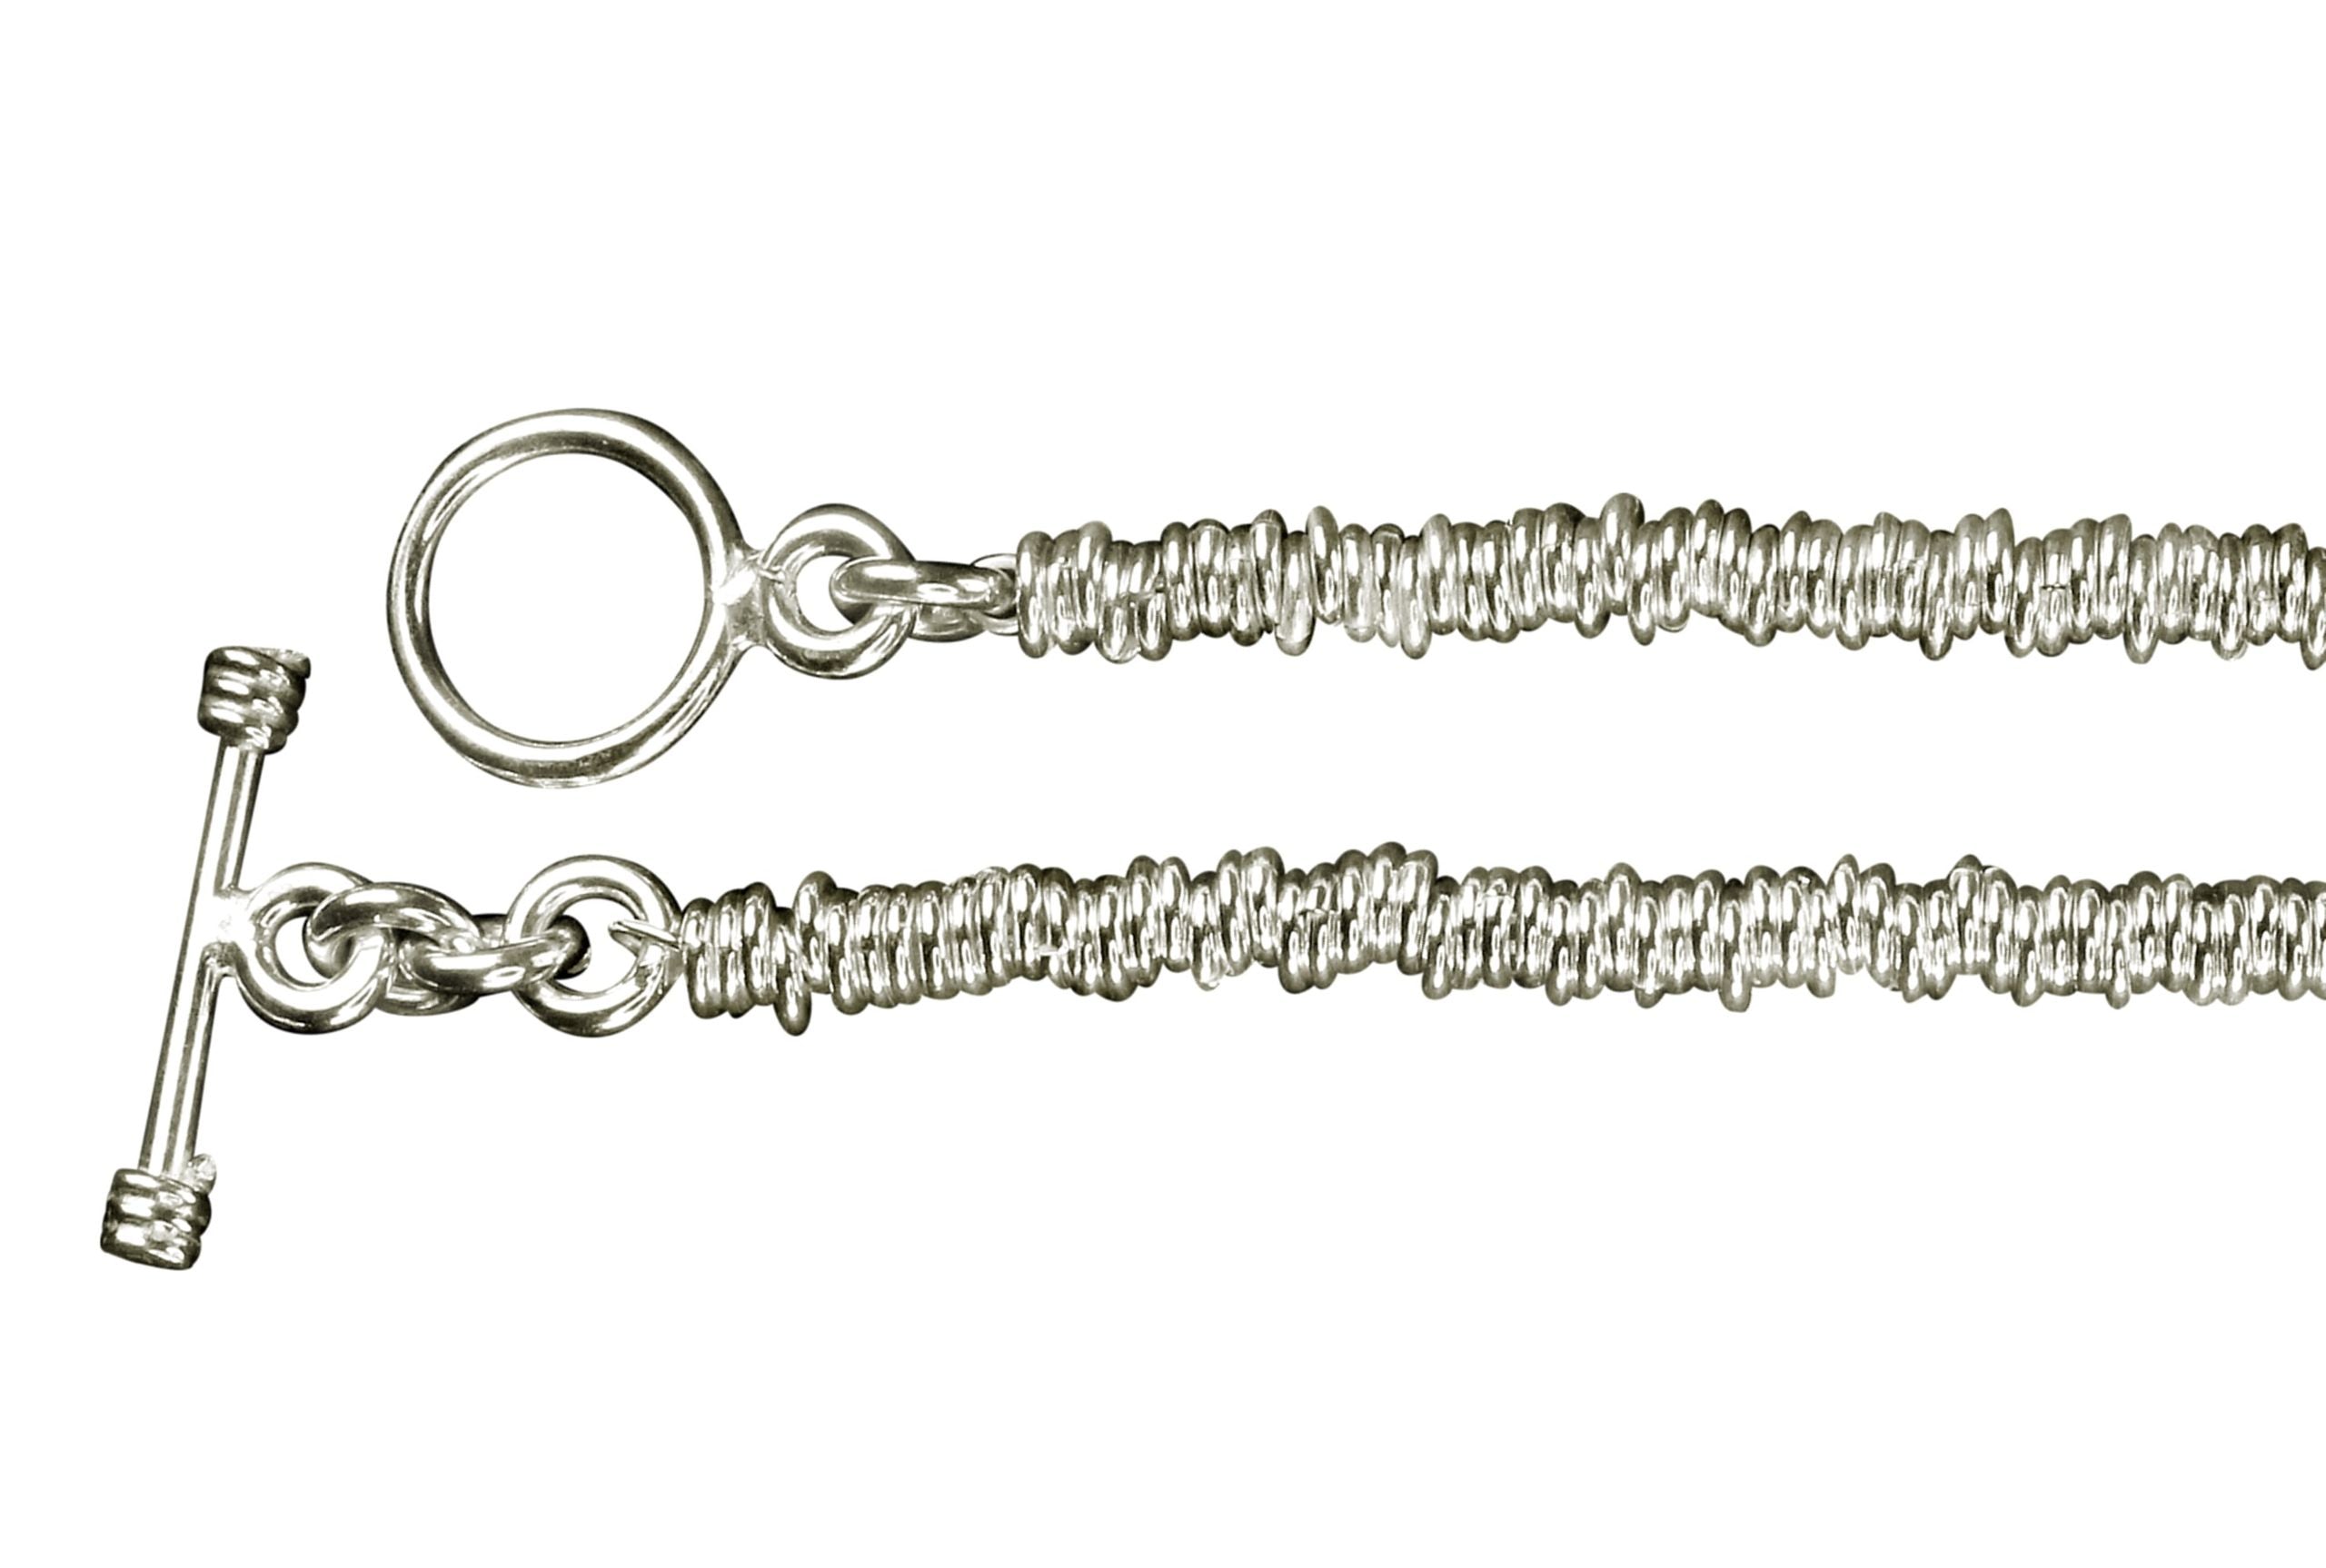 Ein Silberarmband für Damen aus vielen kleinen Silberringen mit einem dekorativen Verschluss.